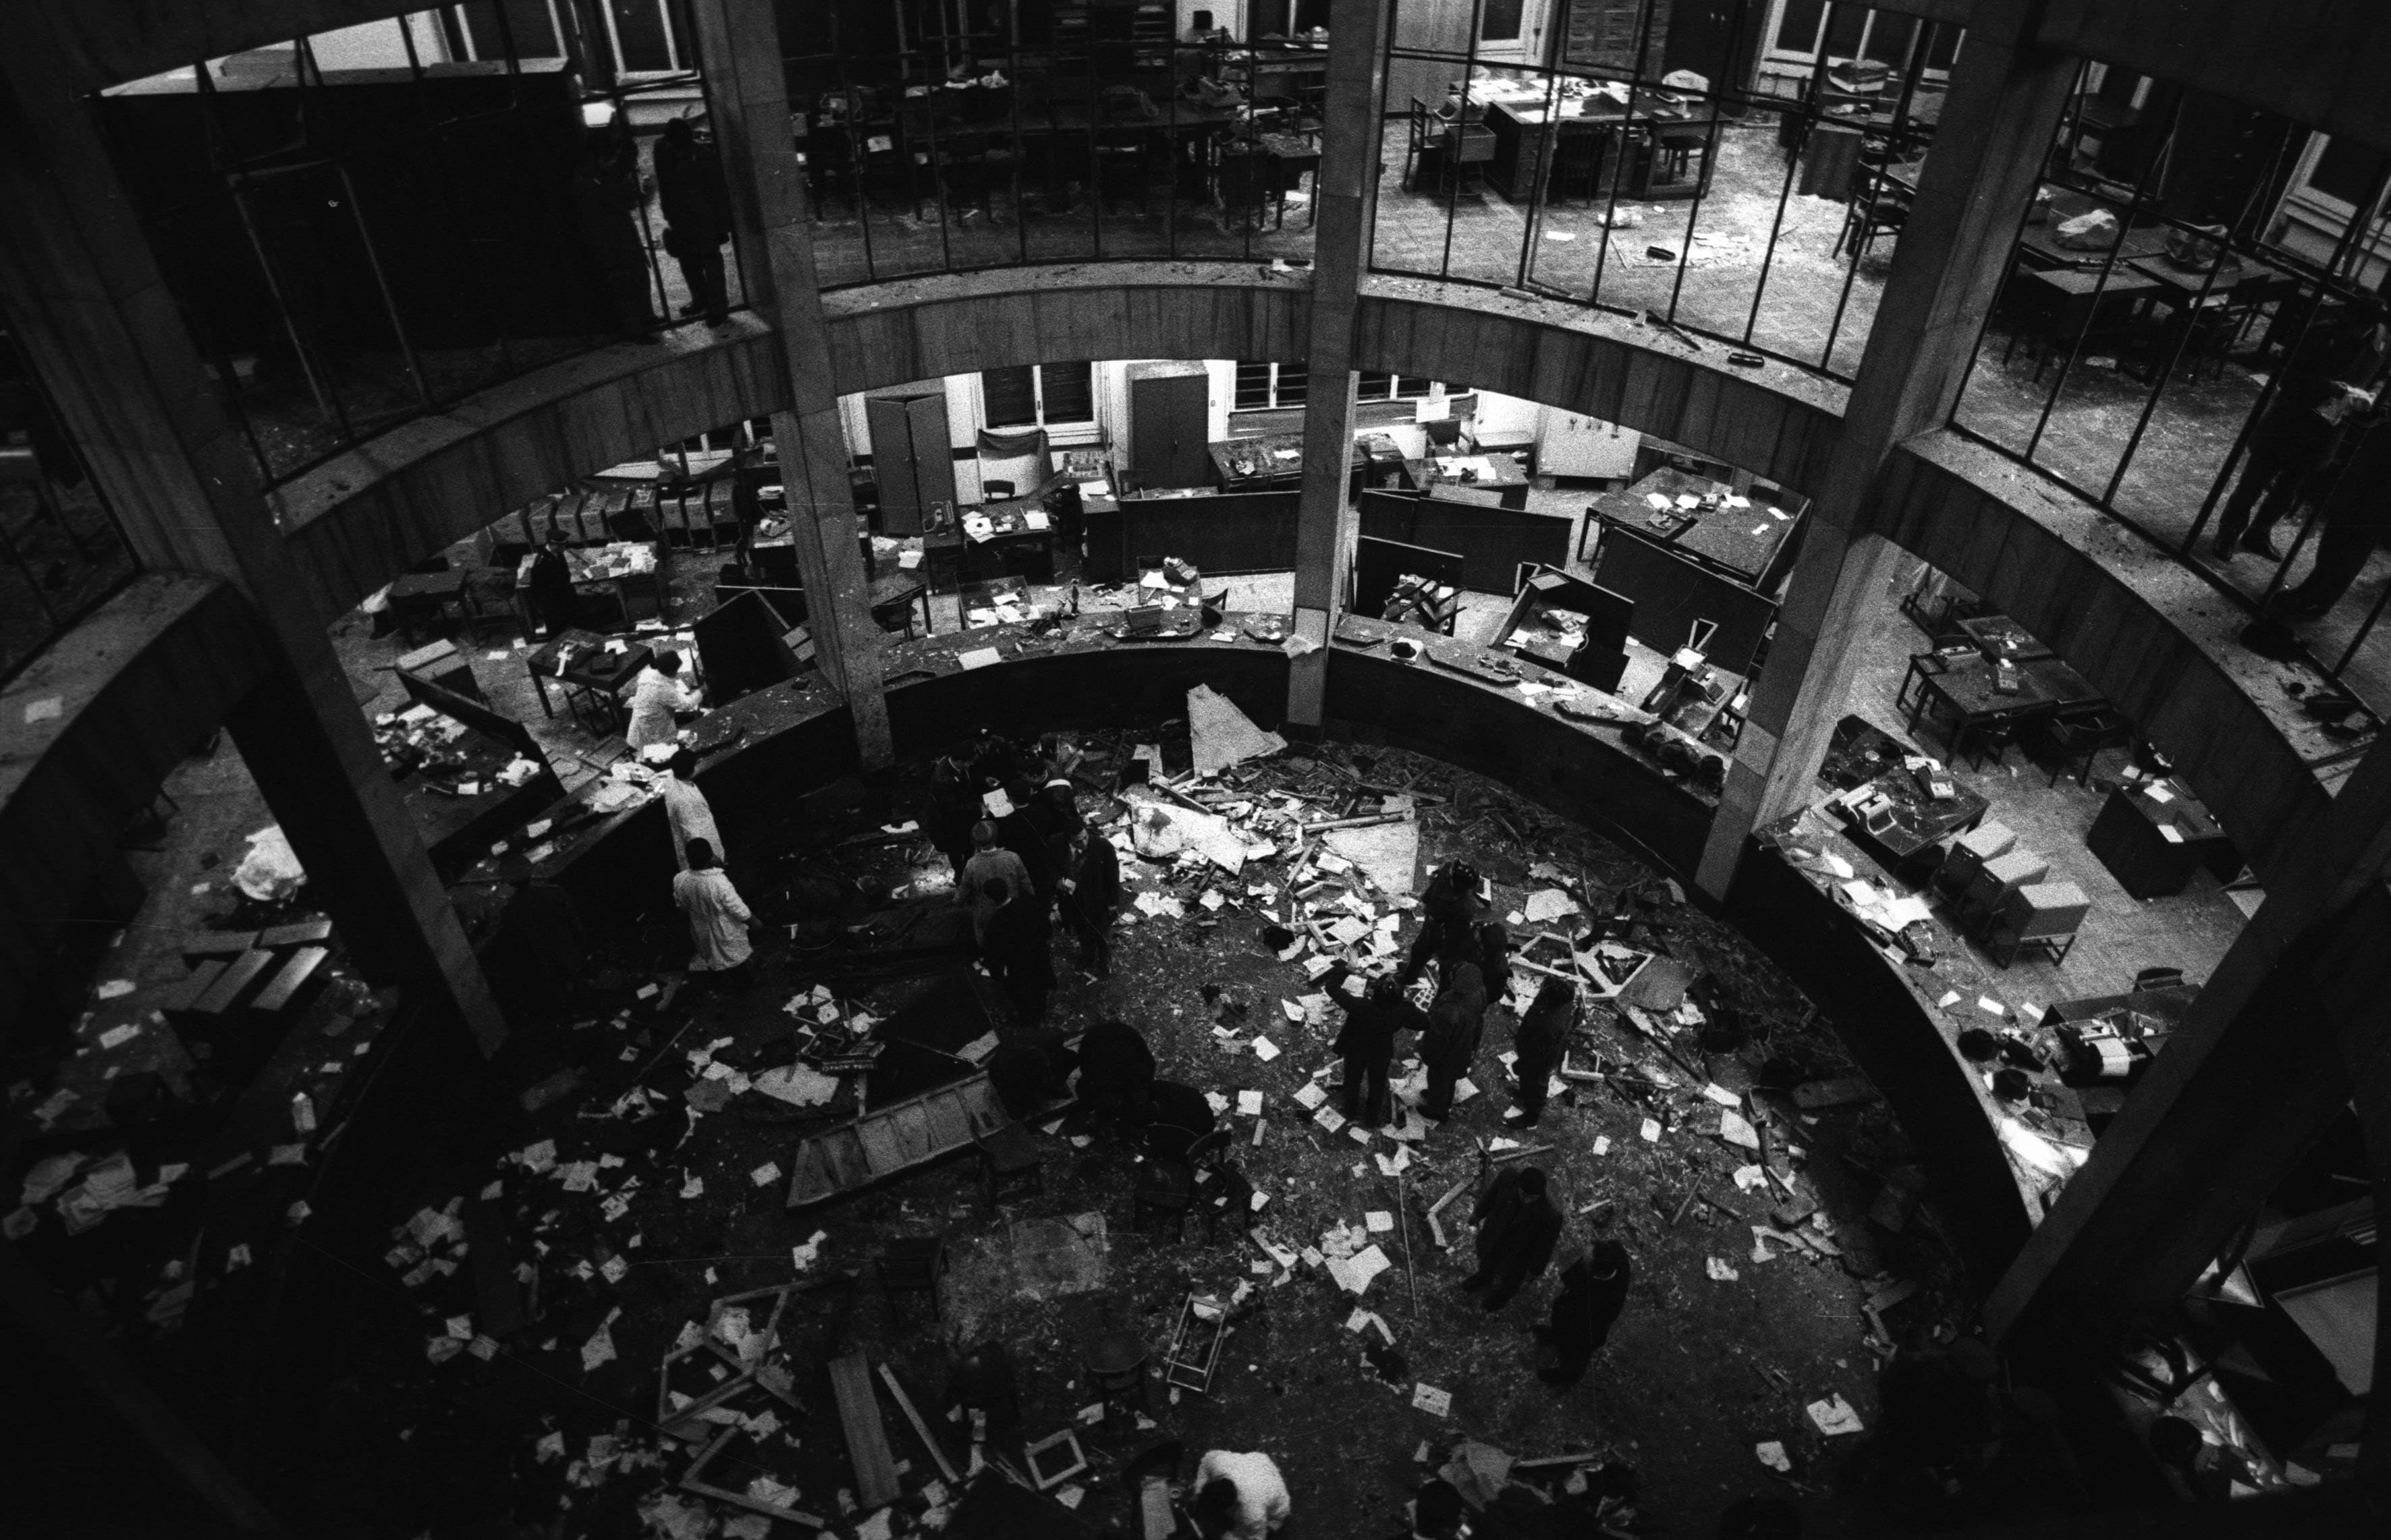 La cosiddetta "Rotonda" , come viene chiamato da dipendenti e clienti il salone circolare dove si affacciano gli sportelli della banca, subito dopo l'esplosione della bomba